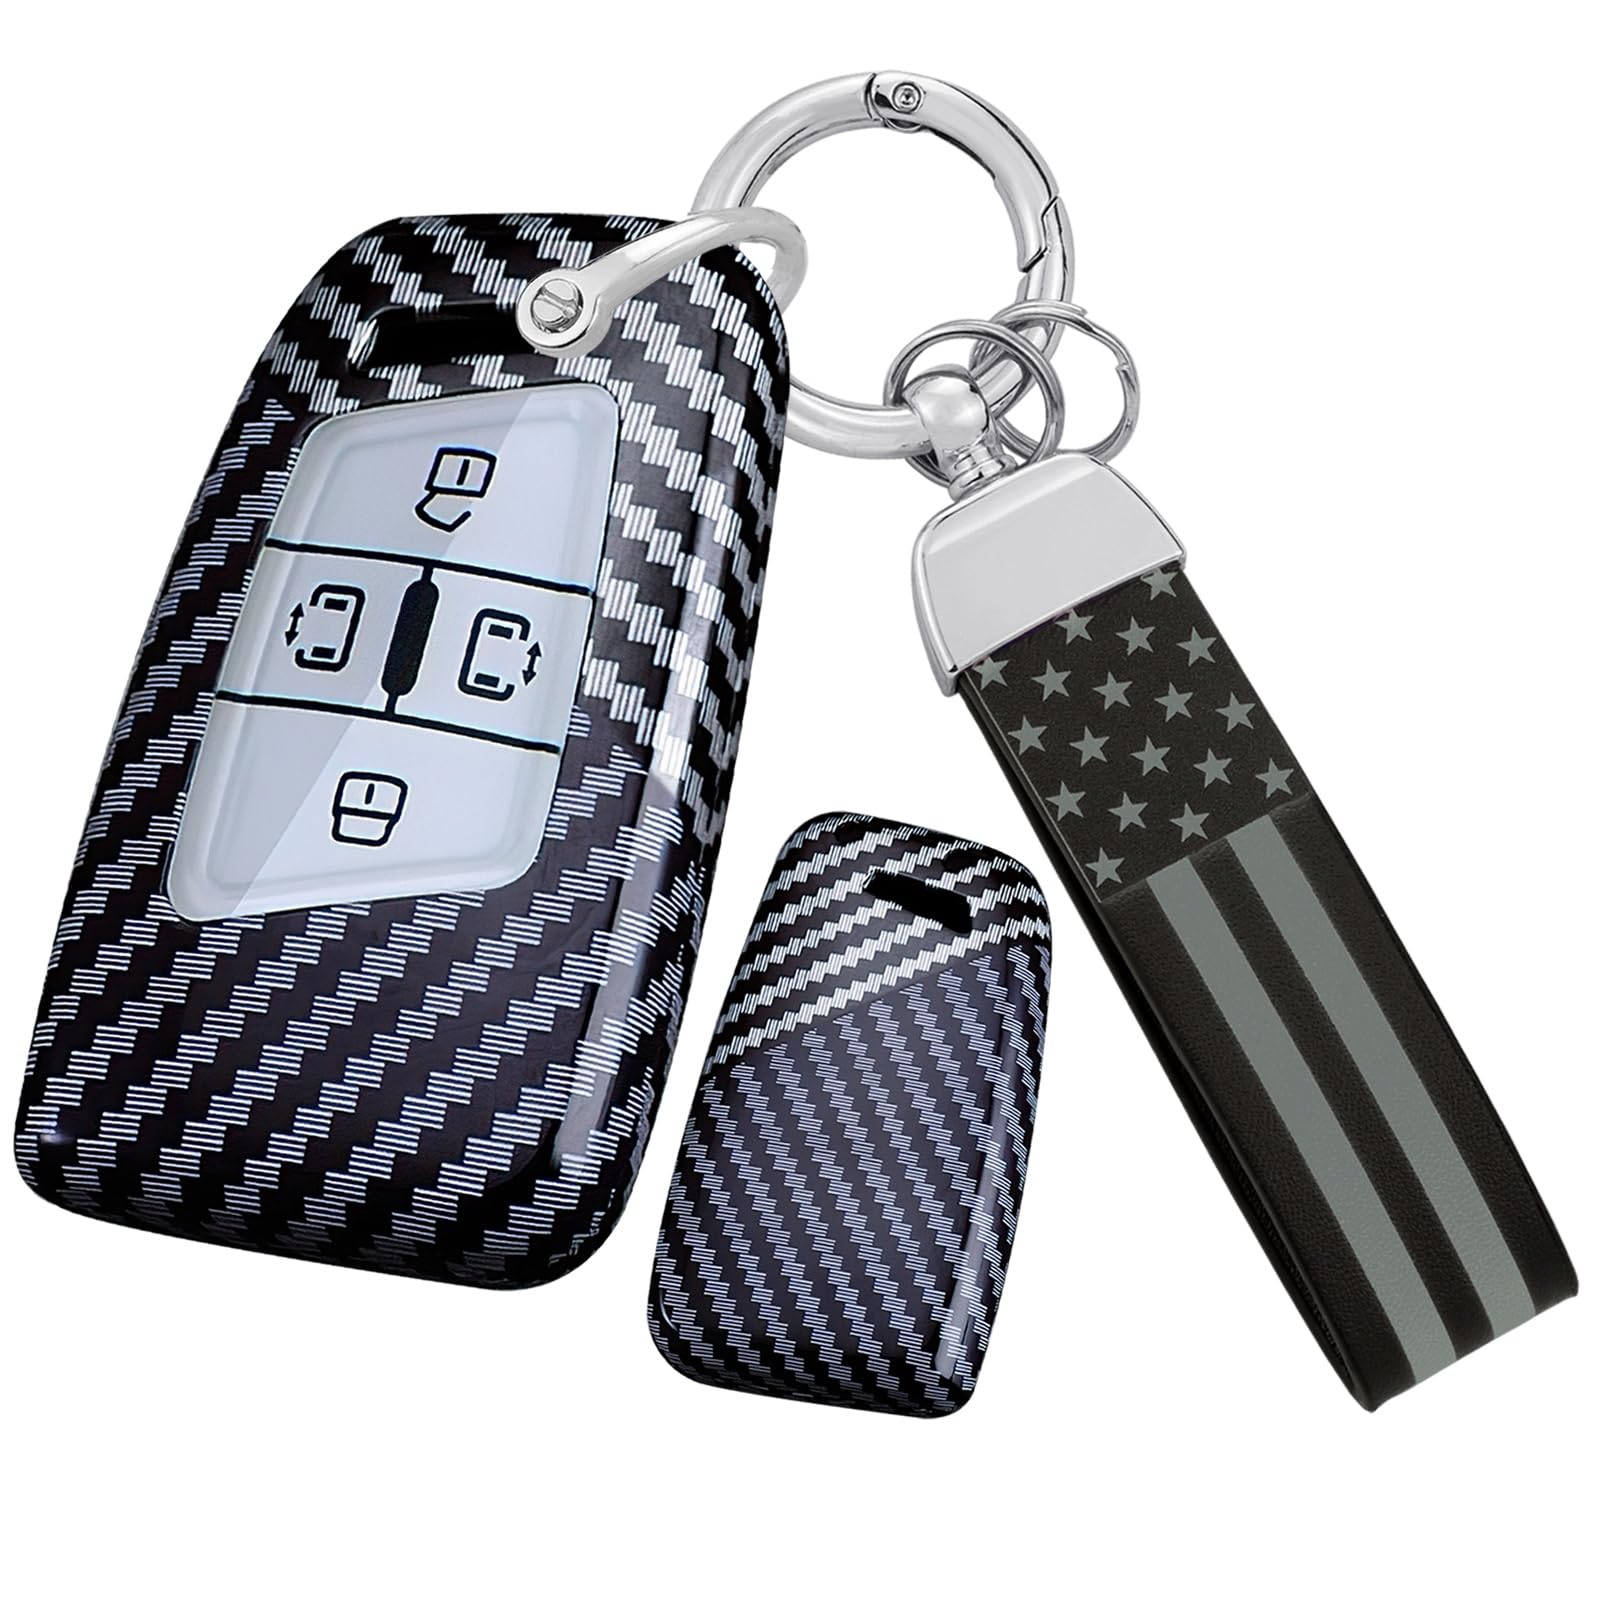 TECART Autoschlüsselgehäuse Schlüsselmäppchen Schlüsseltasche Passt für VW New Viloran 2020 2021 2022 2023 Schlüsselgehäuse PC Fernsteuerung Schlüsselhülle Schlüsselanhänger 4 Tasten B-Schwarz Weiß von TECART